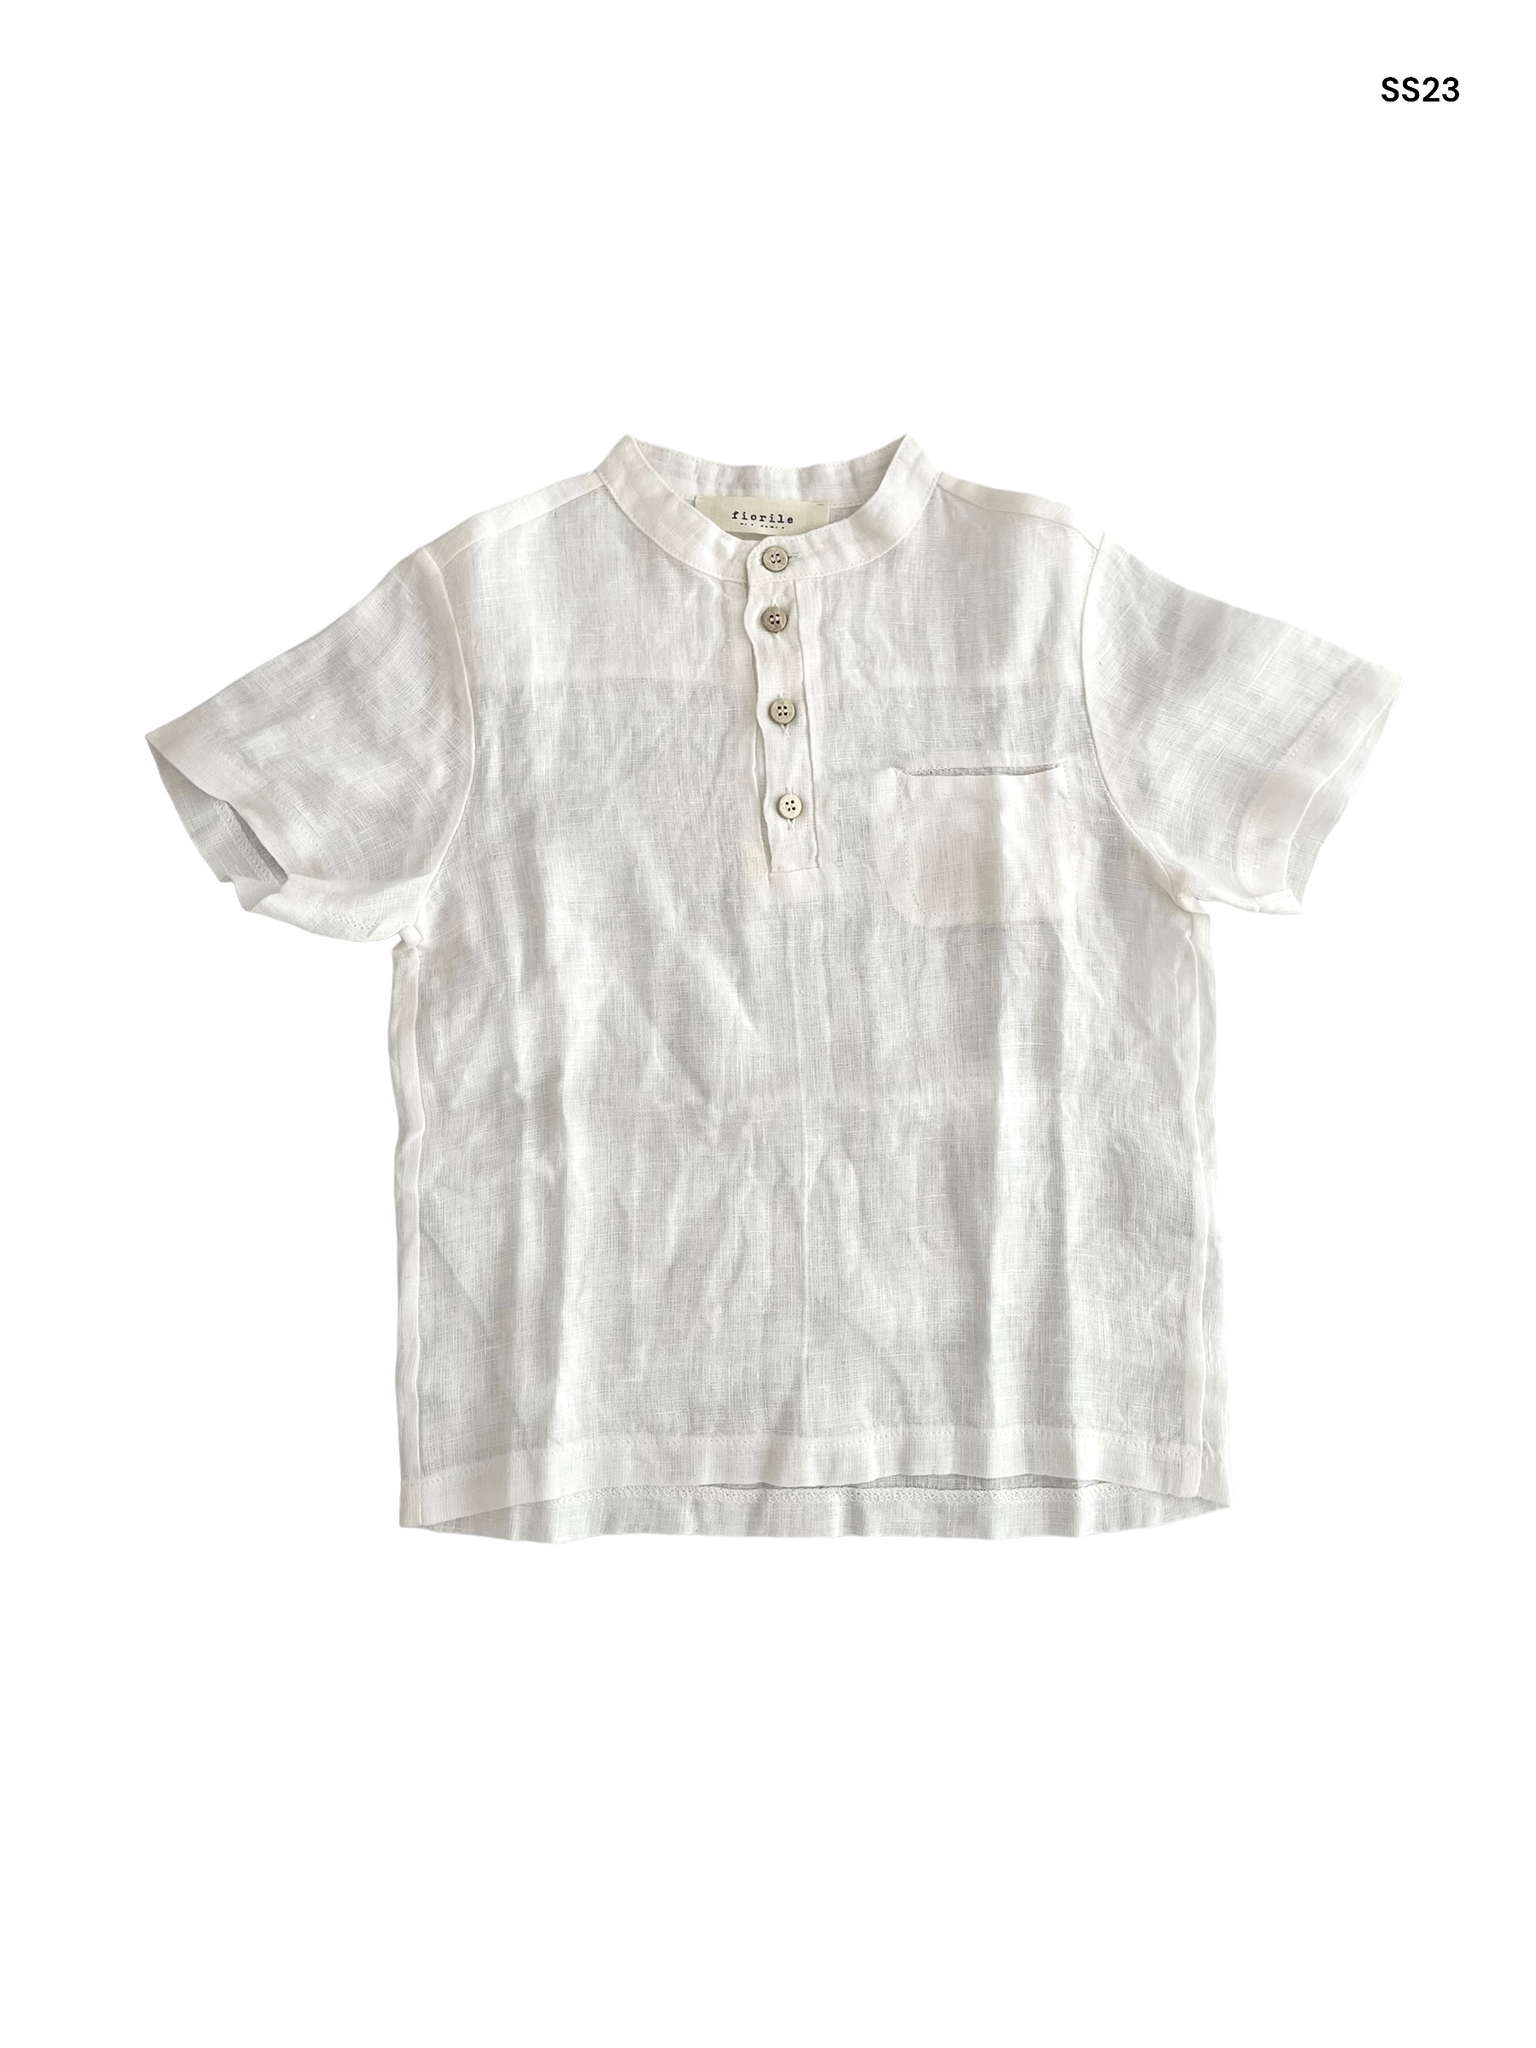 Camicia serafino bianca per neonato e bambino